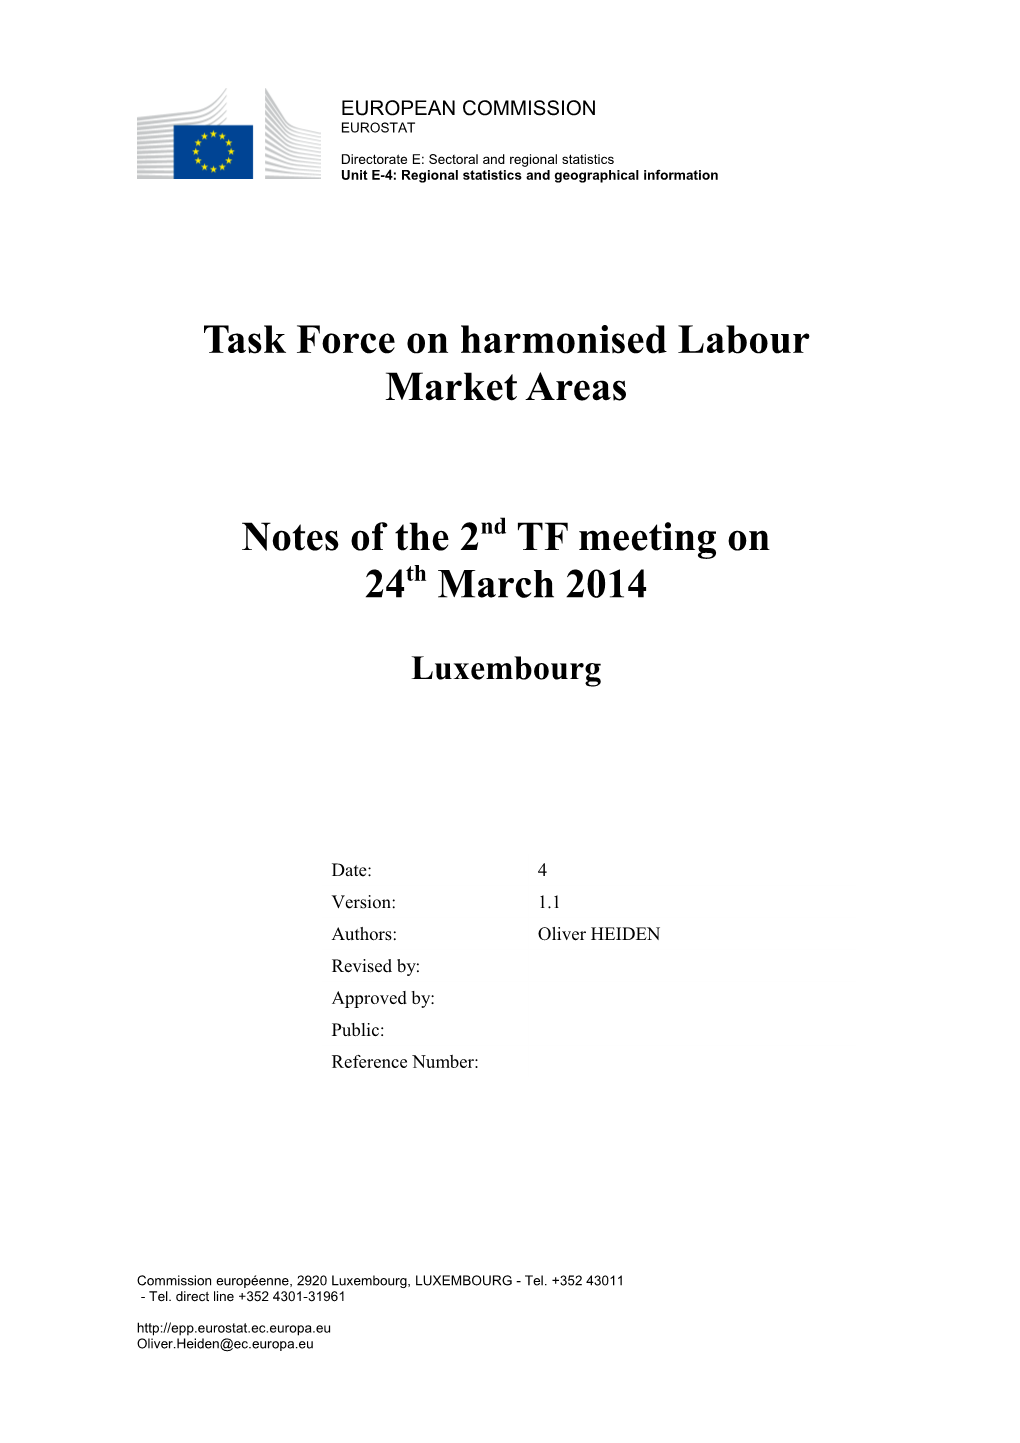 Task Force on Harmonised Labour Market Areas